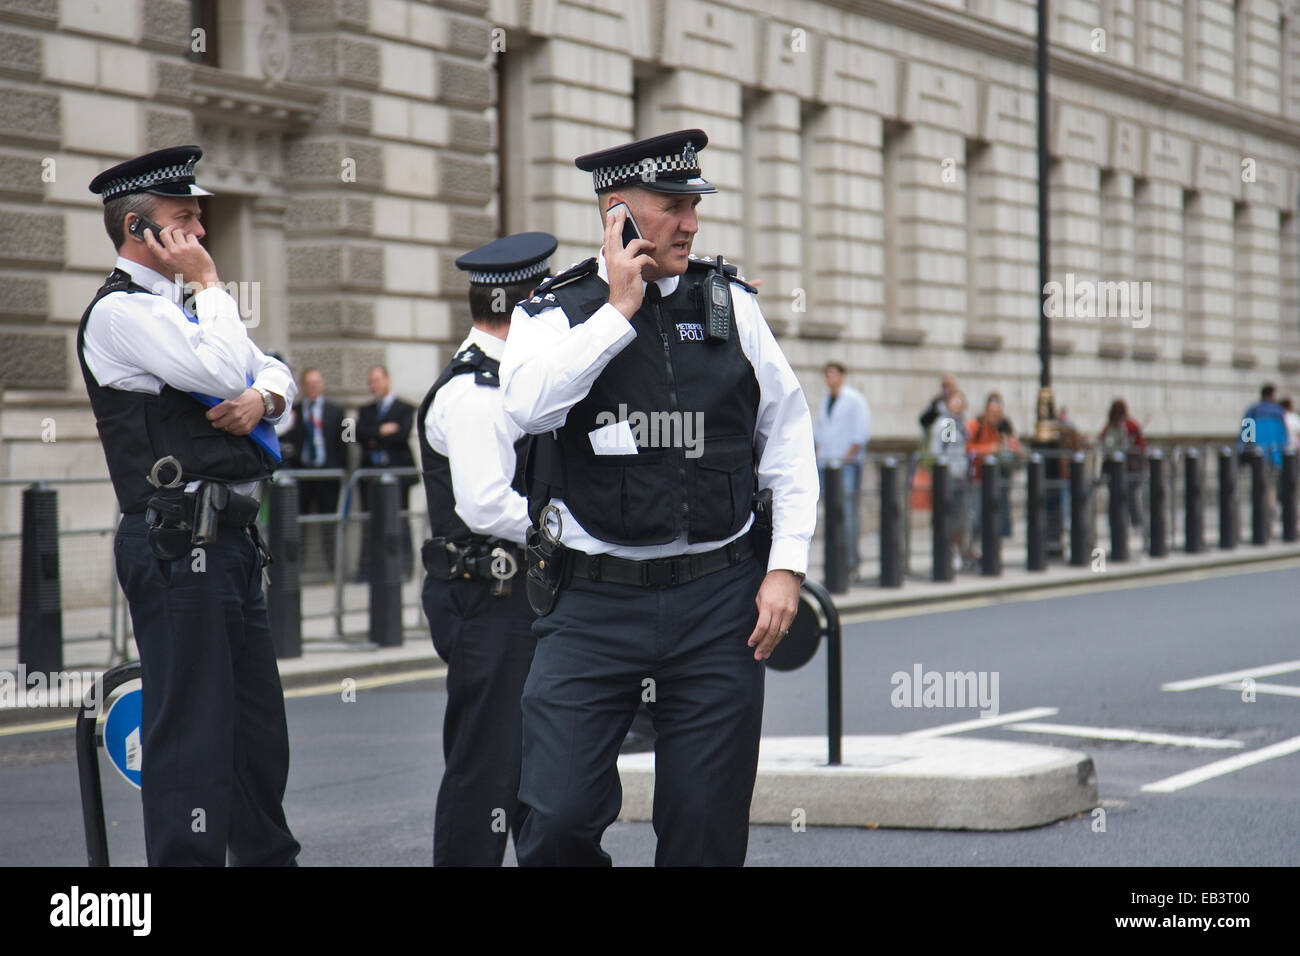 Agents de la Police métropolitaine dans la région de Whitehall, Londres, Angleterre, Royaume-Uni Banque D'Images